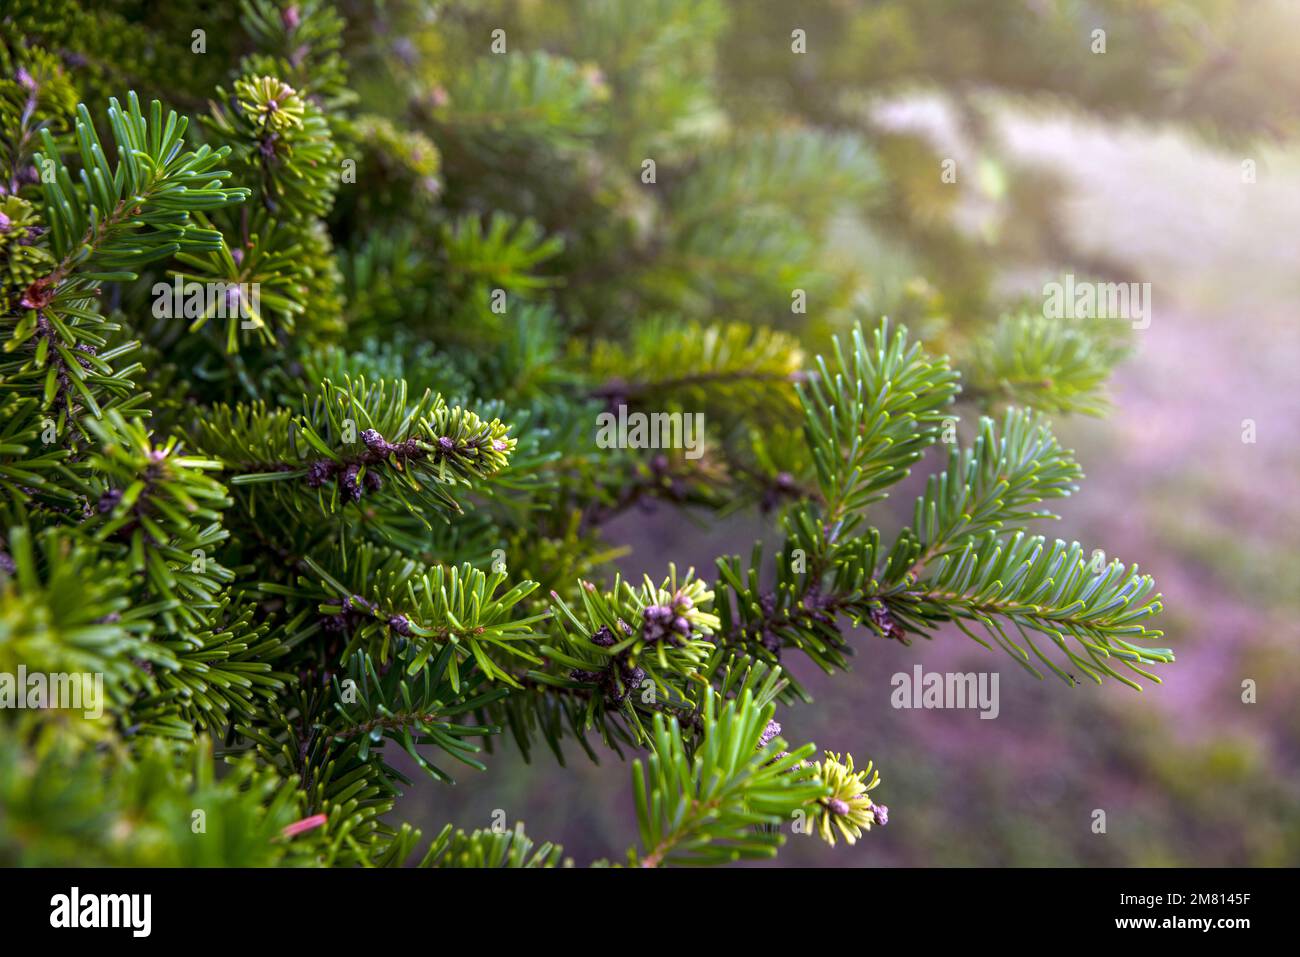 Albero di Natale che cresce nella foresta. Aby nordmanniana. L'abete Nordmann è una delle specie più importanti coltivate per l'albero di Natale. Foto Stock